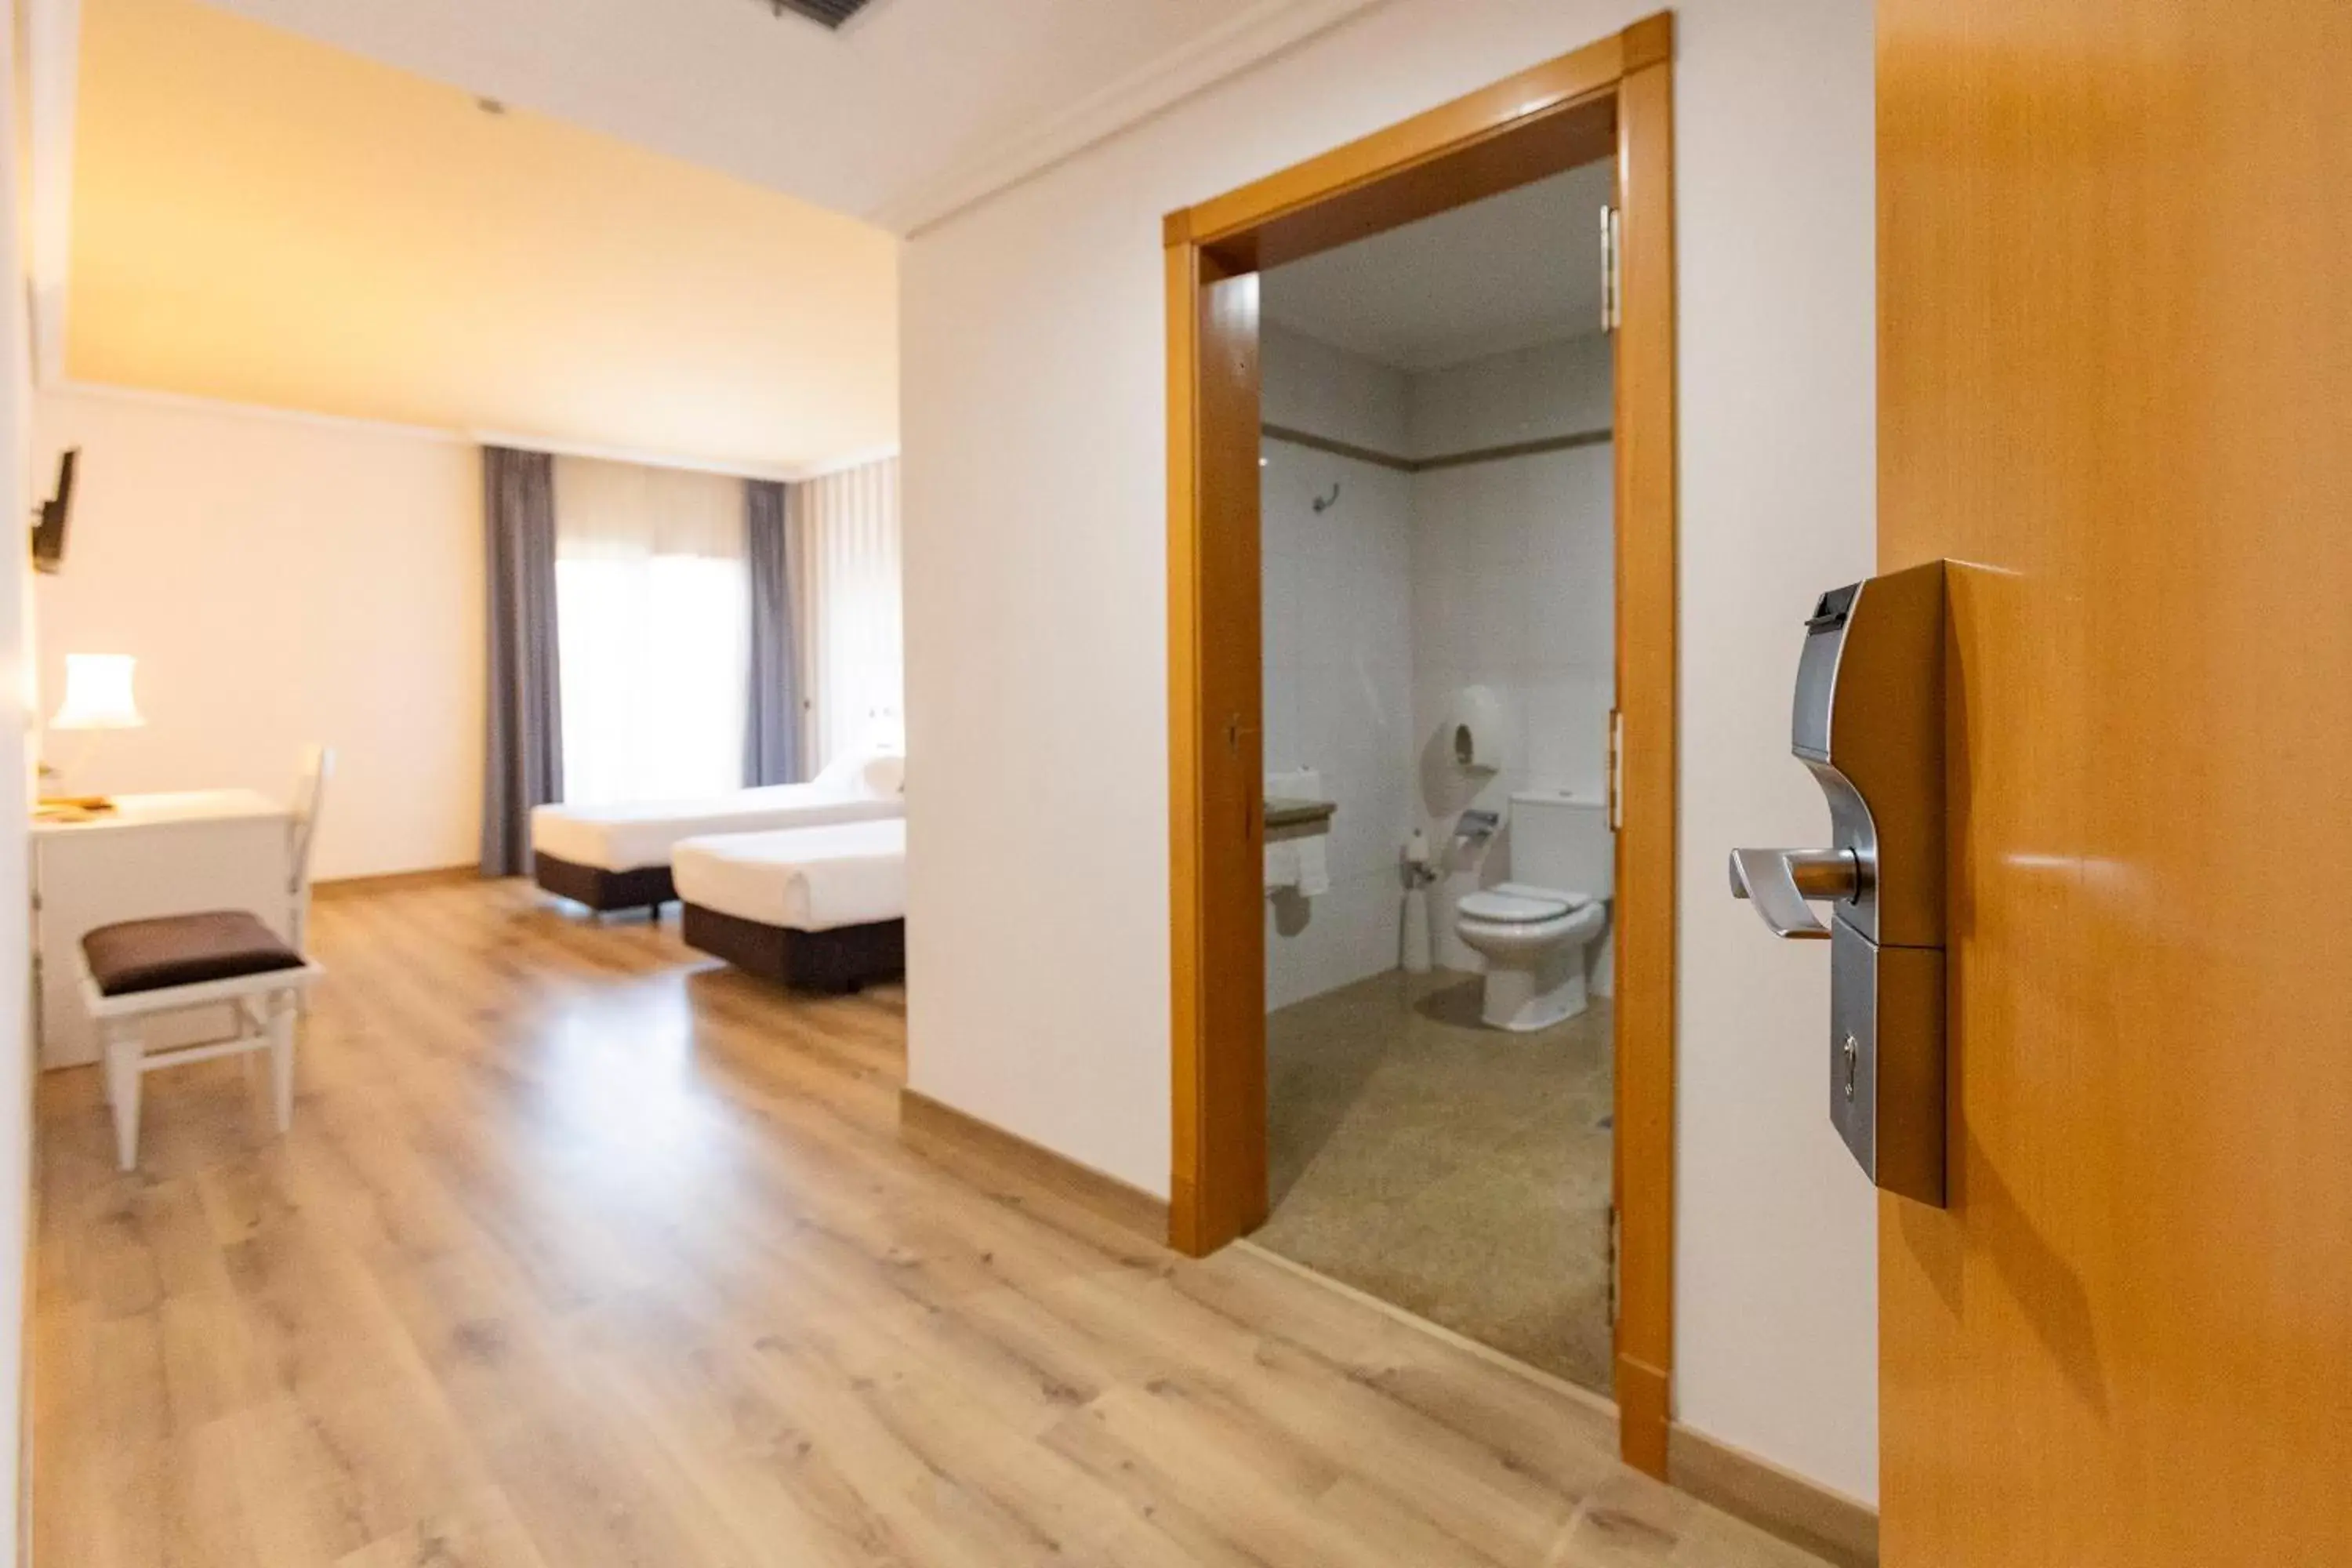 Bedroom, Bathroom in Hotel Alfonso I